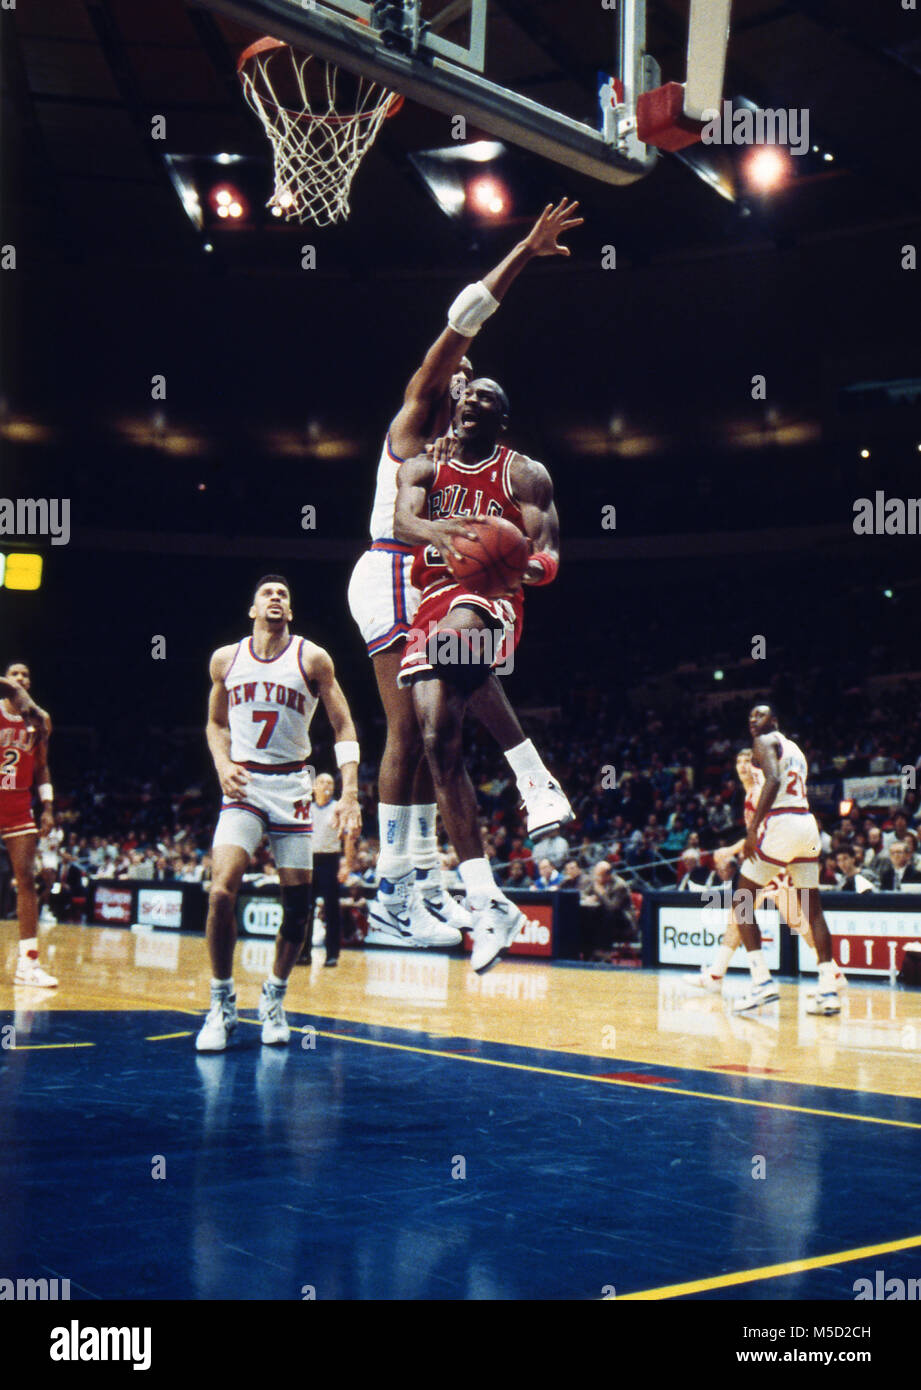 Michael Jordan au basket tout en étant défendu par Gerald Wilkins des New York Knicks au cours d'un match au Madison Square Garden en 1989. Banque D'Images